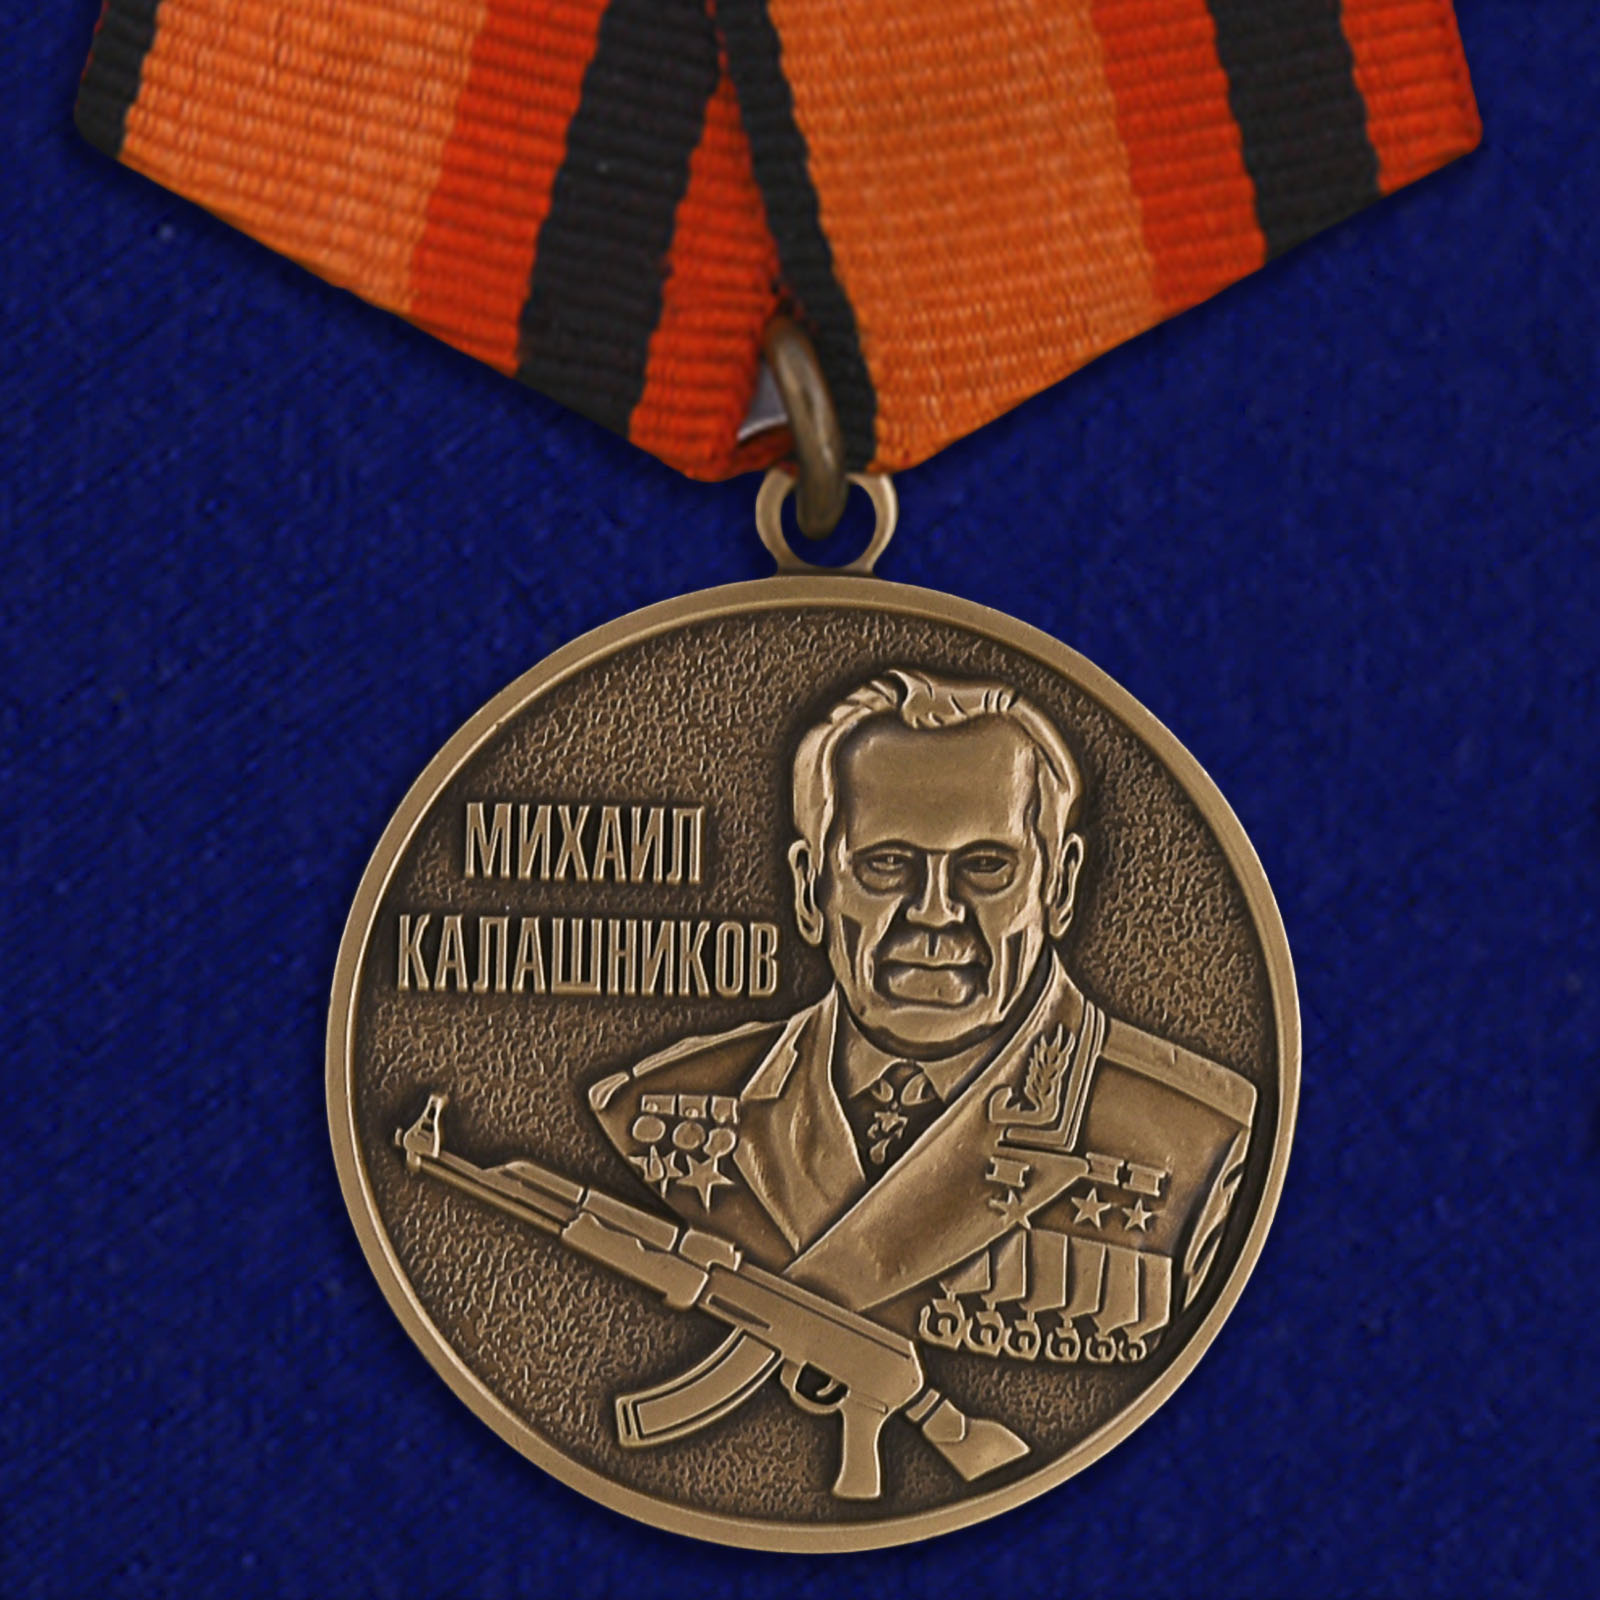 Медаль "Михаил Калашников"